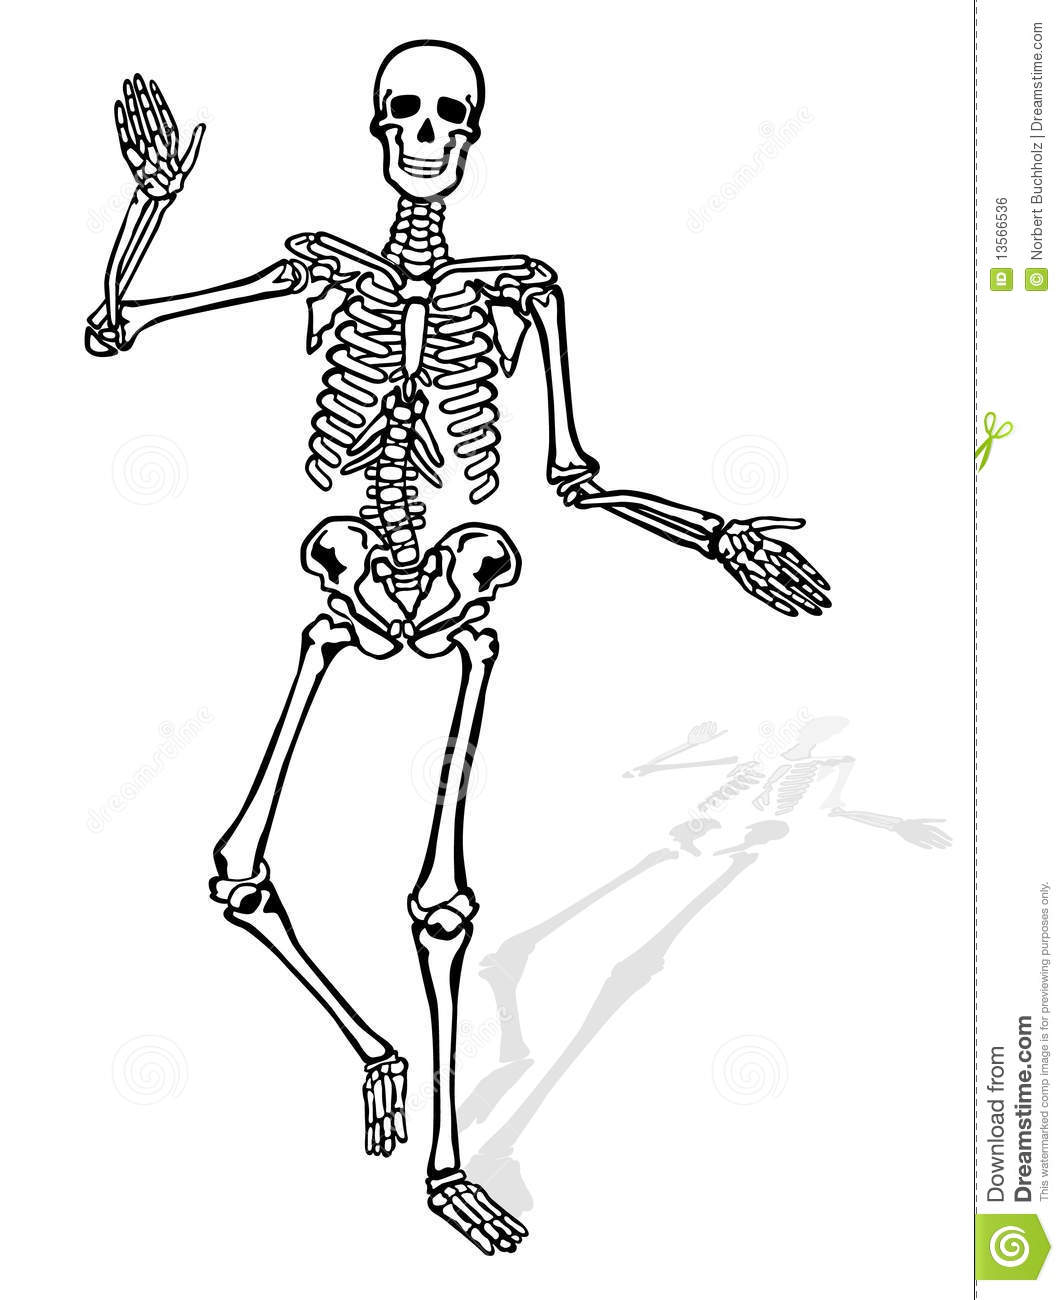 Squelette Humain Image Libre De Droits   Image  13566536